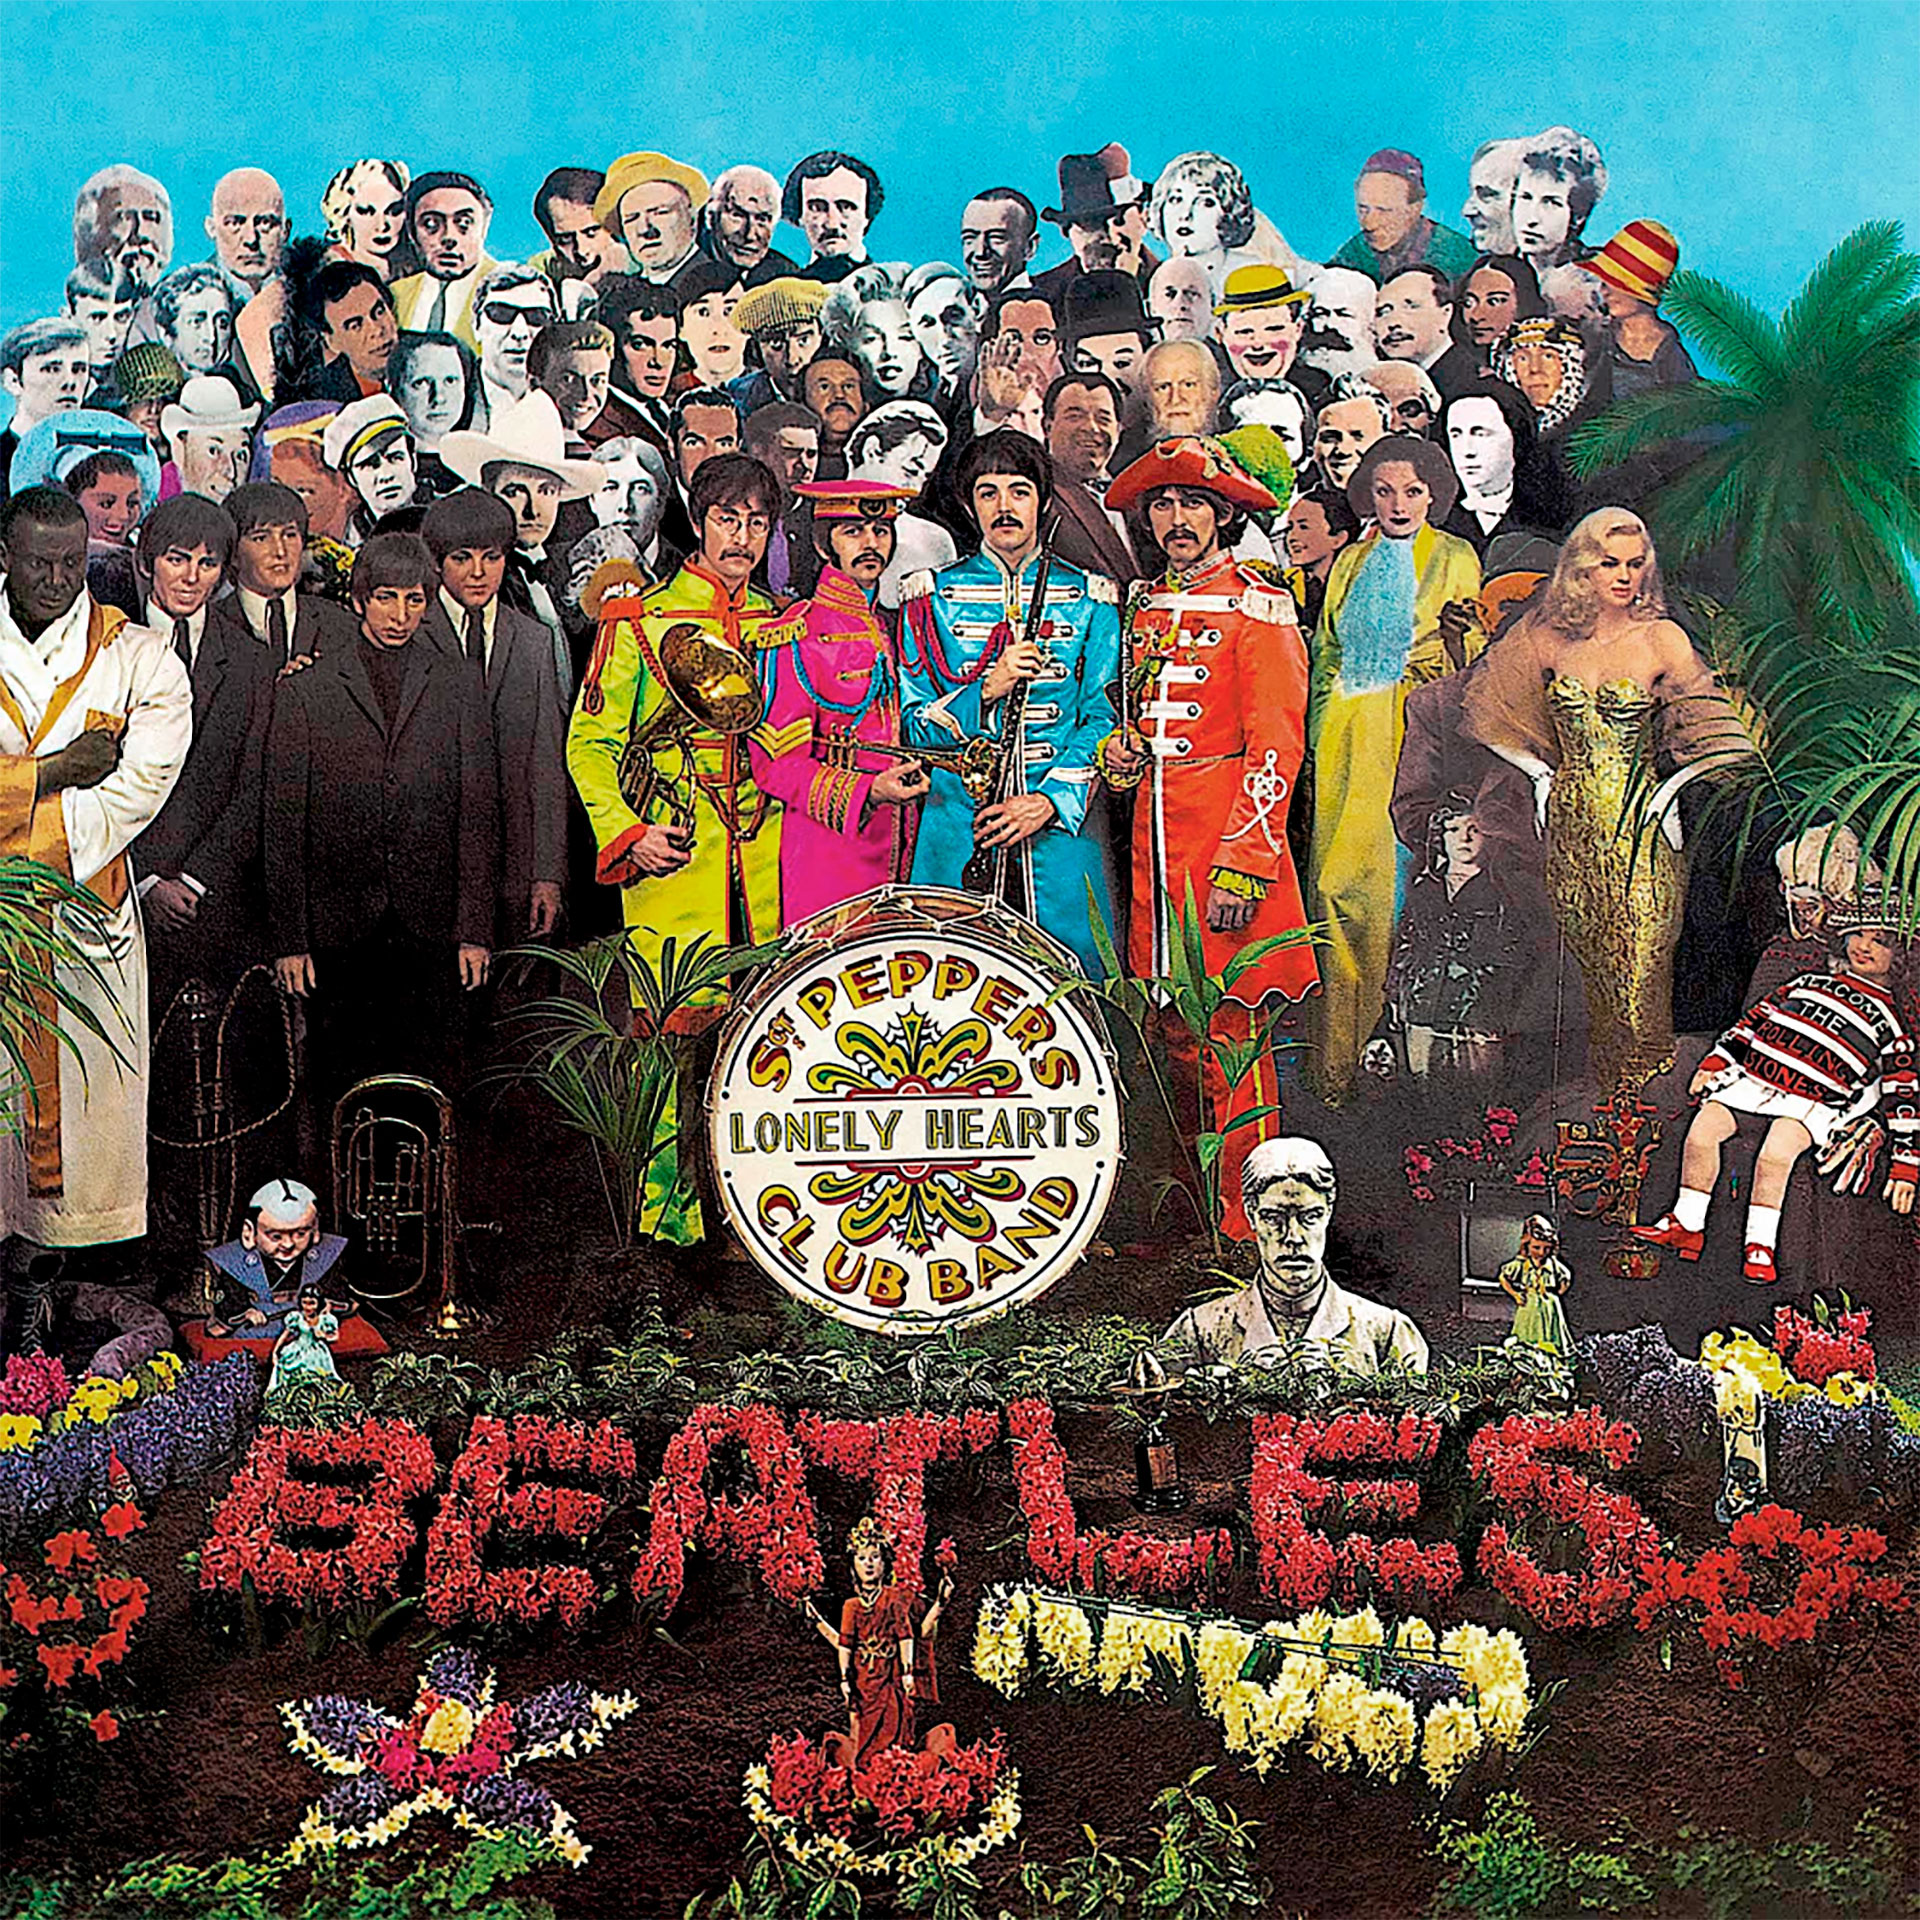 La de Sgt. Pepper, posiblemente, sea la tapa más célebre de la historia del rock. Su realización esconde varias pequeñas grandes historias